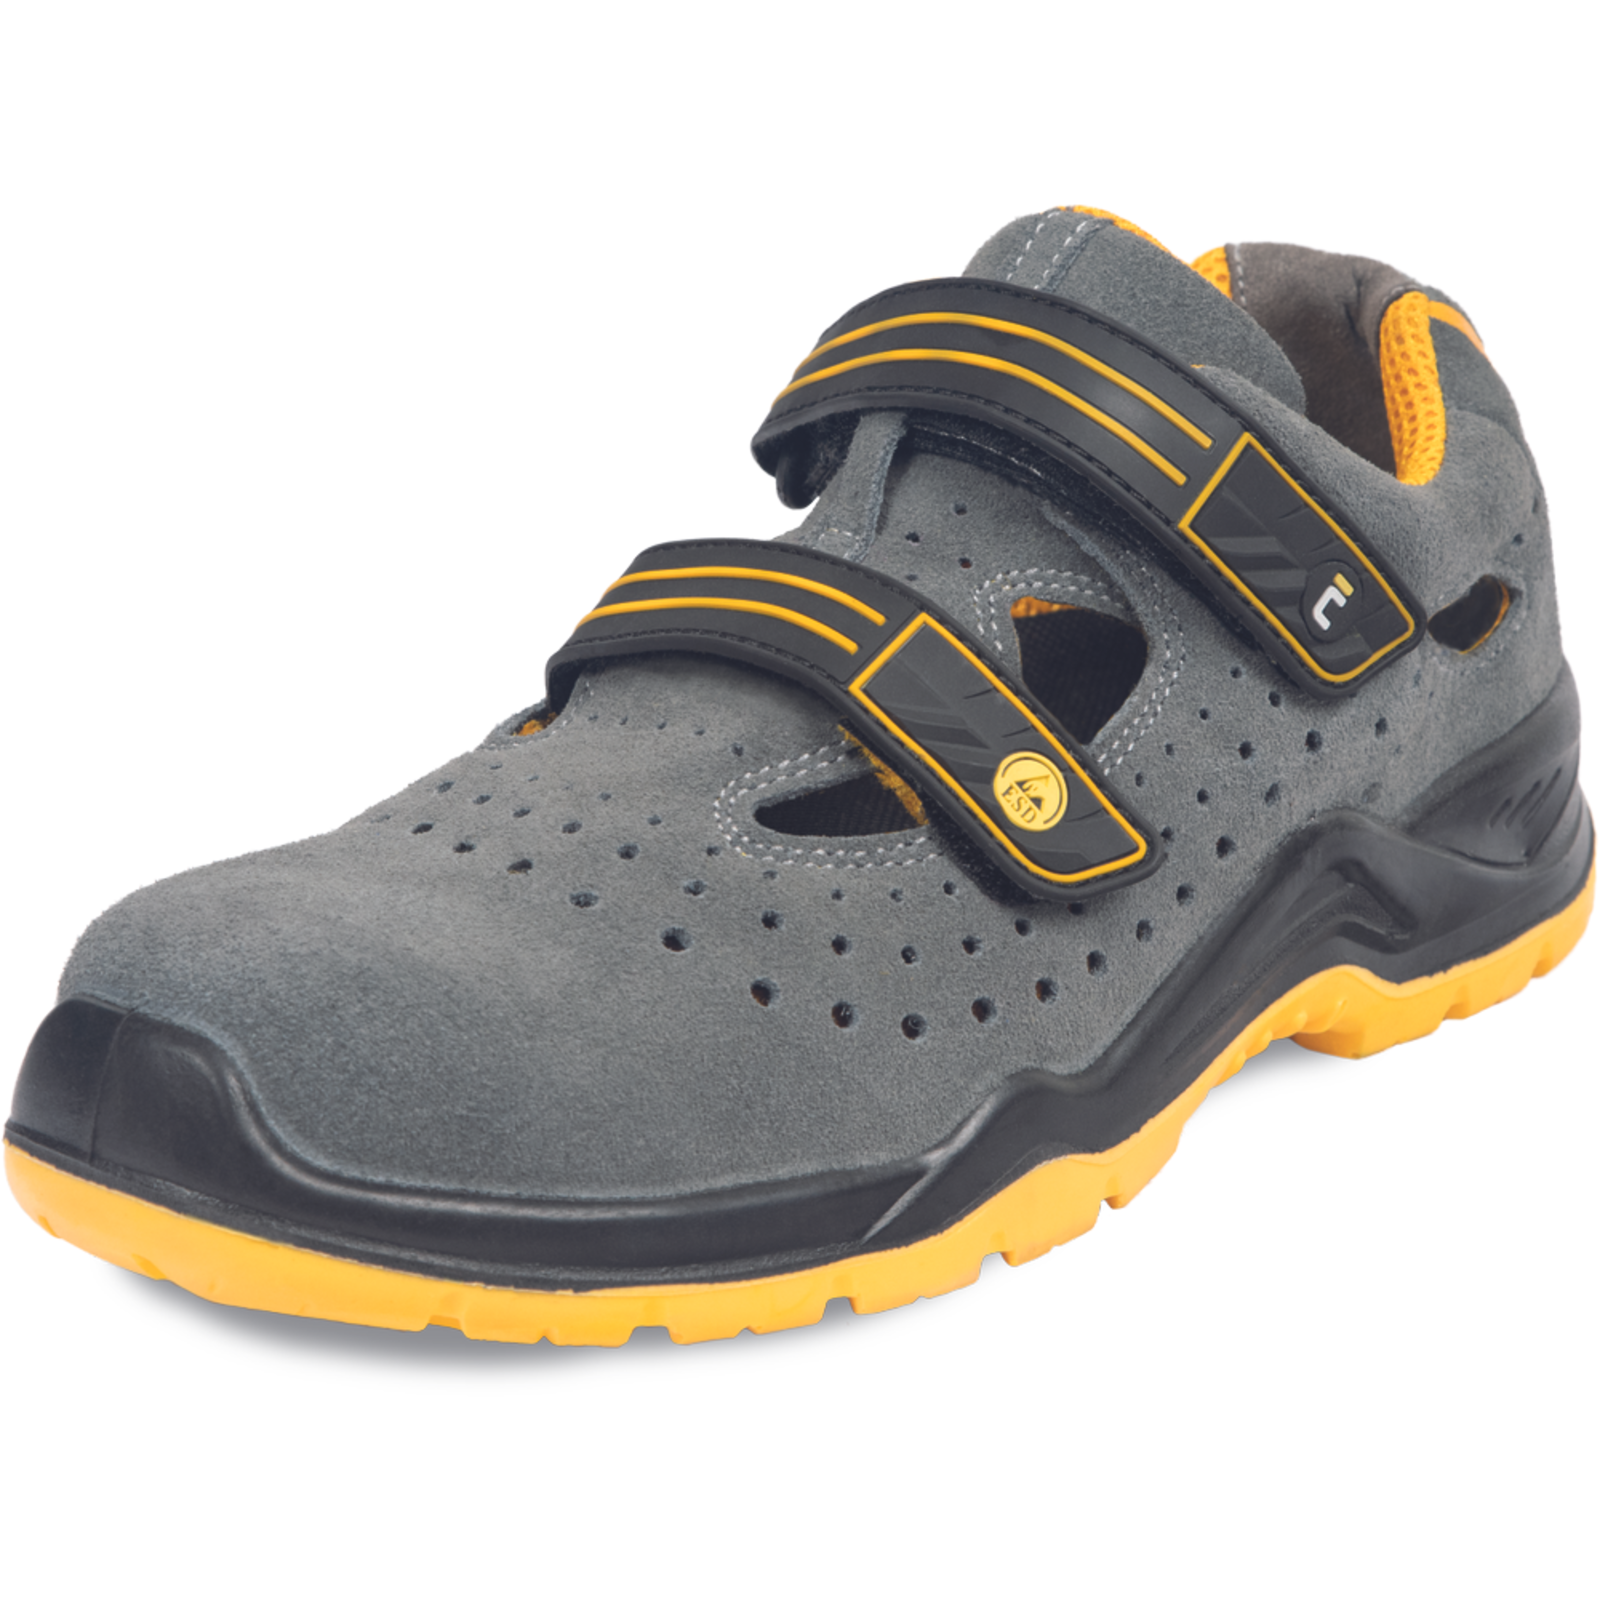 Pracovné bezpečnostné sandále Cerva Yuwill MF ESD S1P SRC - veľkosť: 48, farba: sivá/žltá